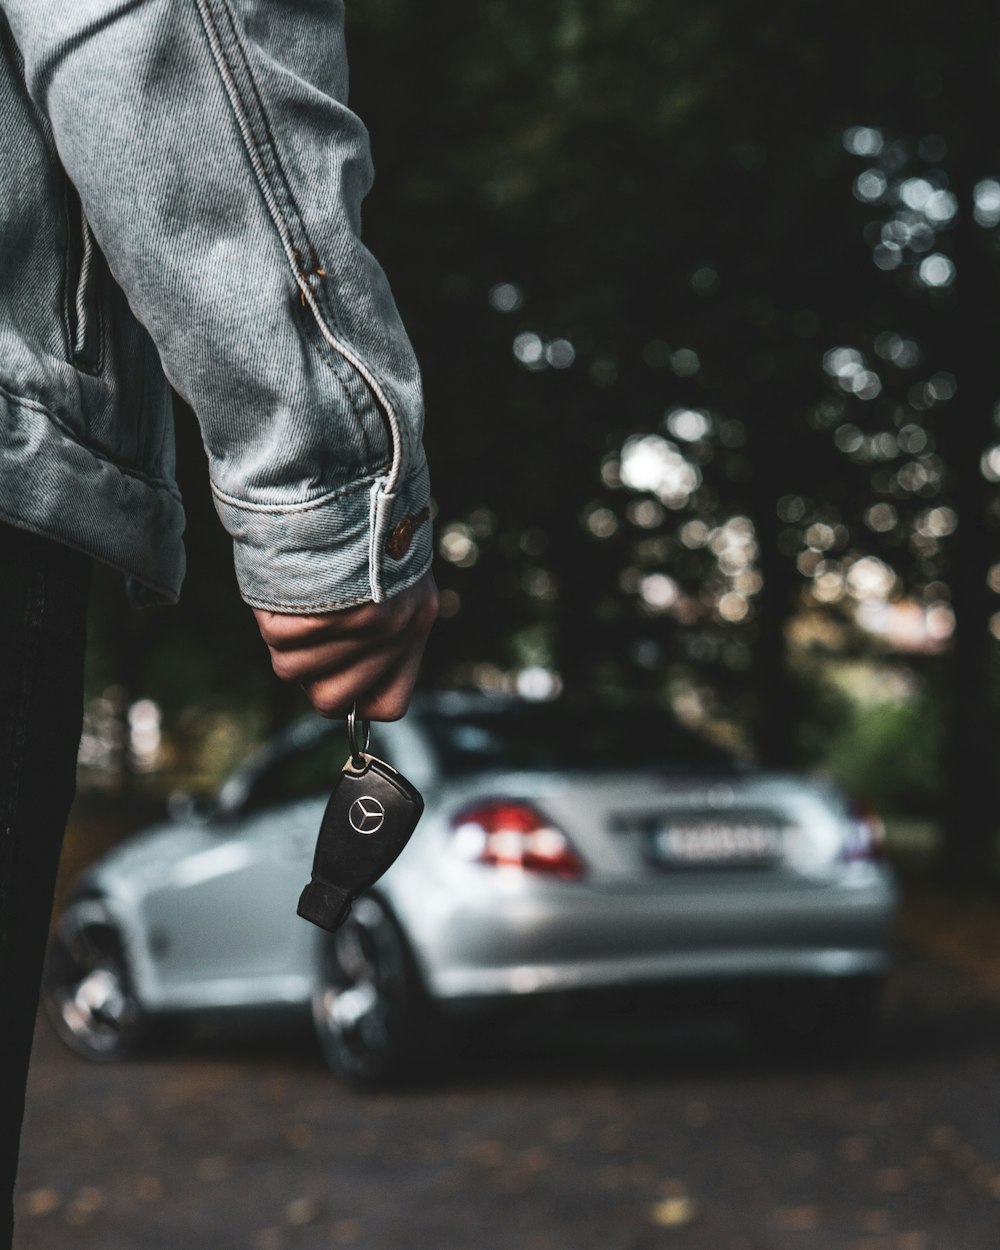 Eine Person, die einen Autoschlüssel neben einem silbernen Auto hält